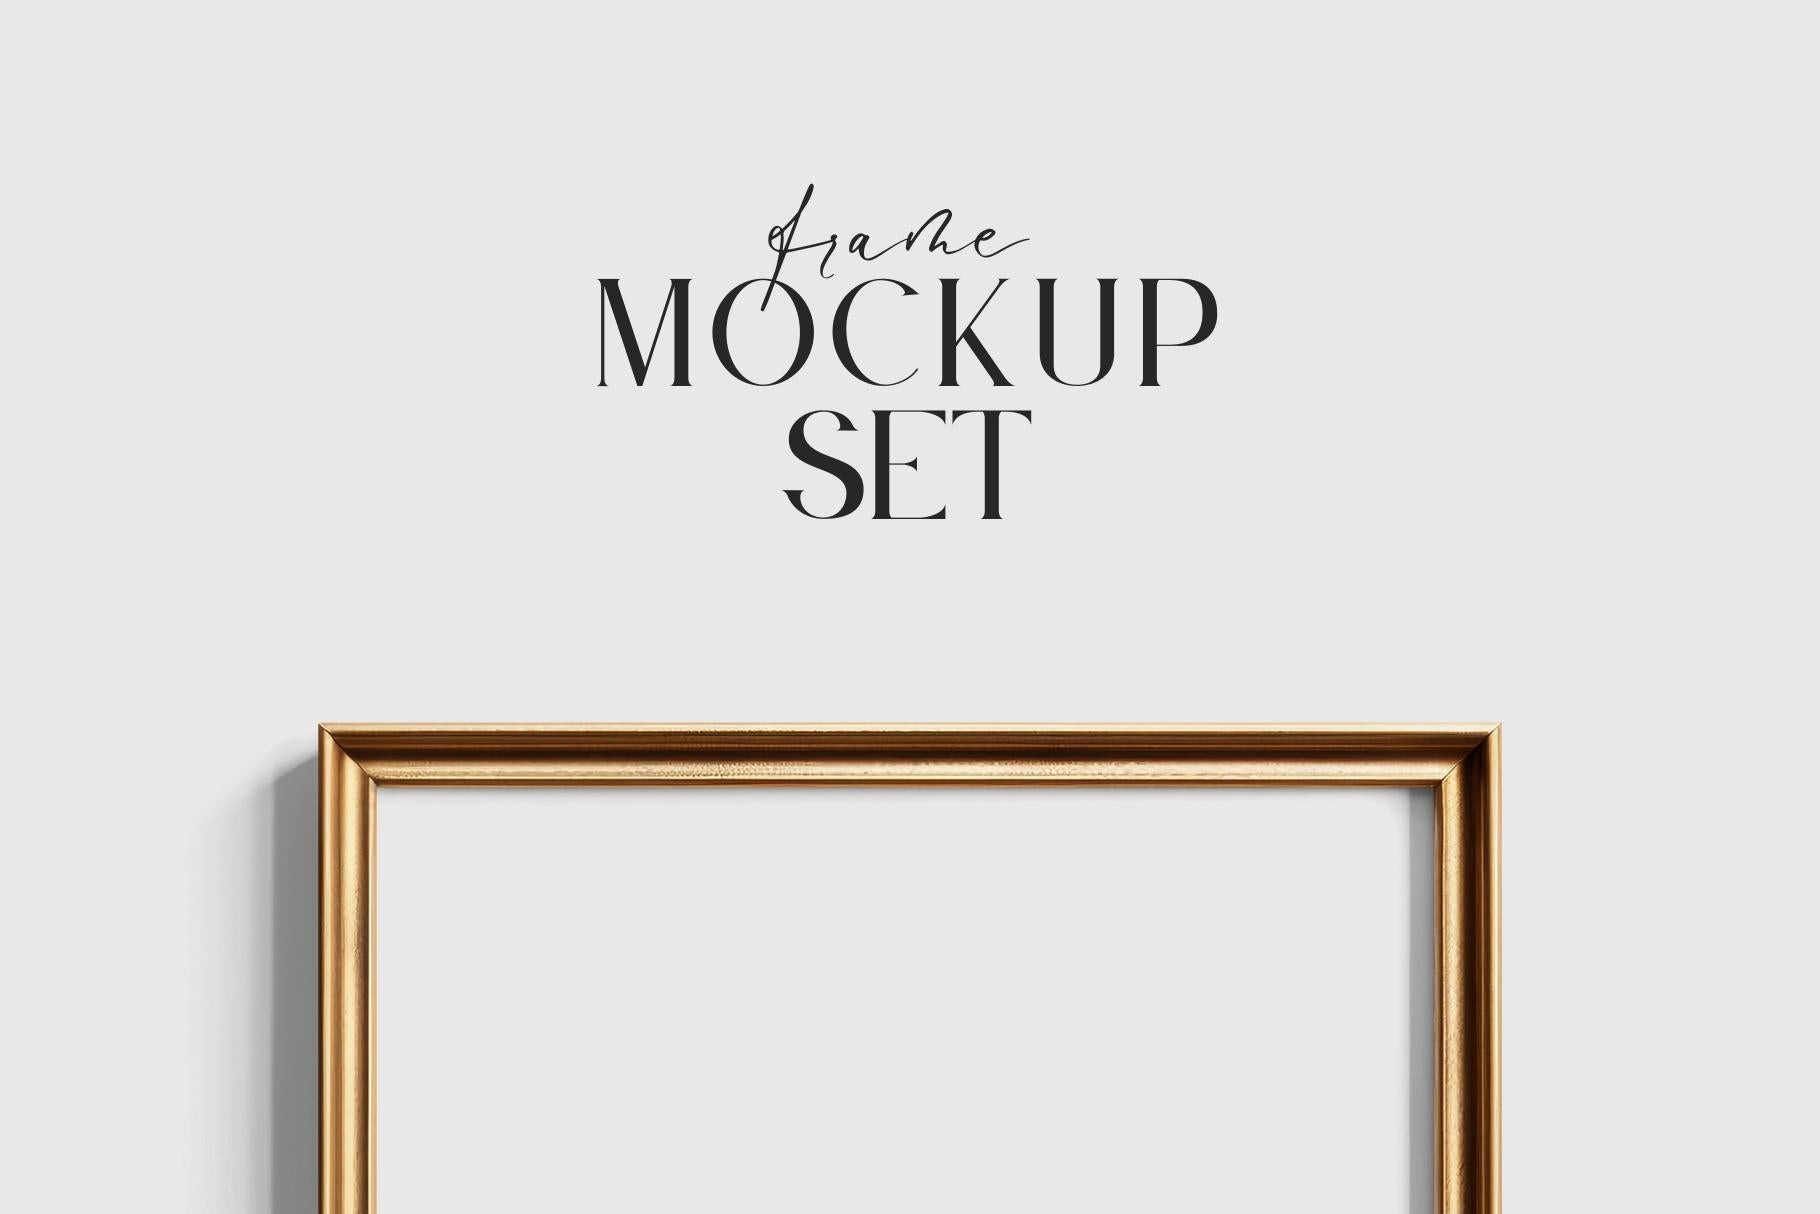 Gallery Wall Mockup | Metallic Frame Mockup Set of 8 Vertical Frames 5:7, 3:4 | Elegant Black and Gold Frame Mockup Set | PSD Template + Transparent PNG Files